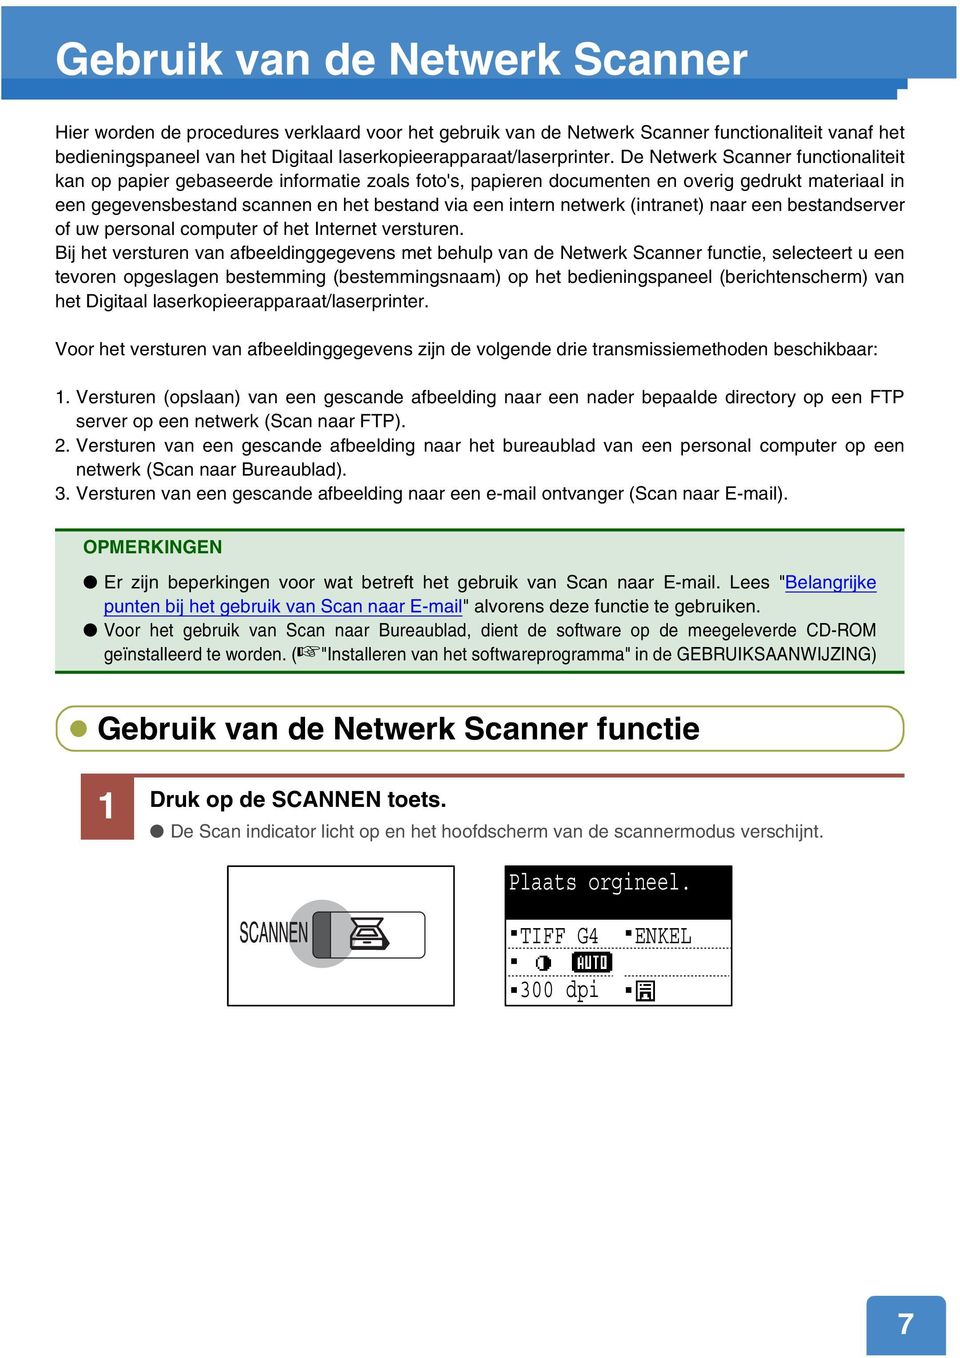 De Netwerk Scanner functionaliteit kan op papier gebaseerde informatie zoals foto's, papieren documenten en overig gedrukt materiaal in een gegevensbestand scannen en het bestand via een intern